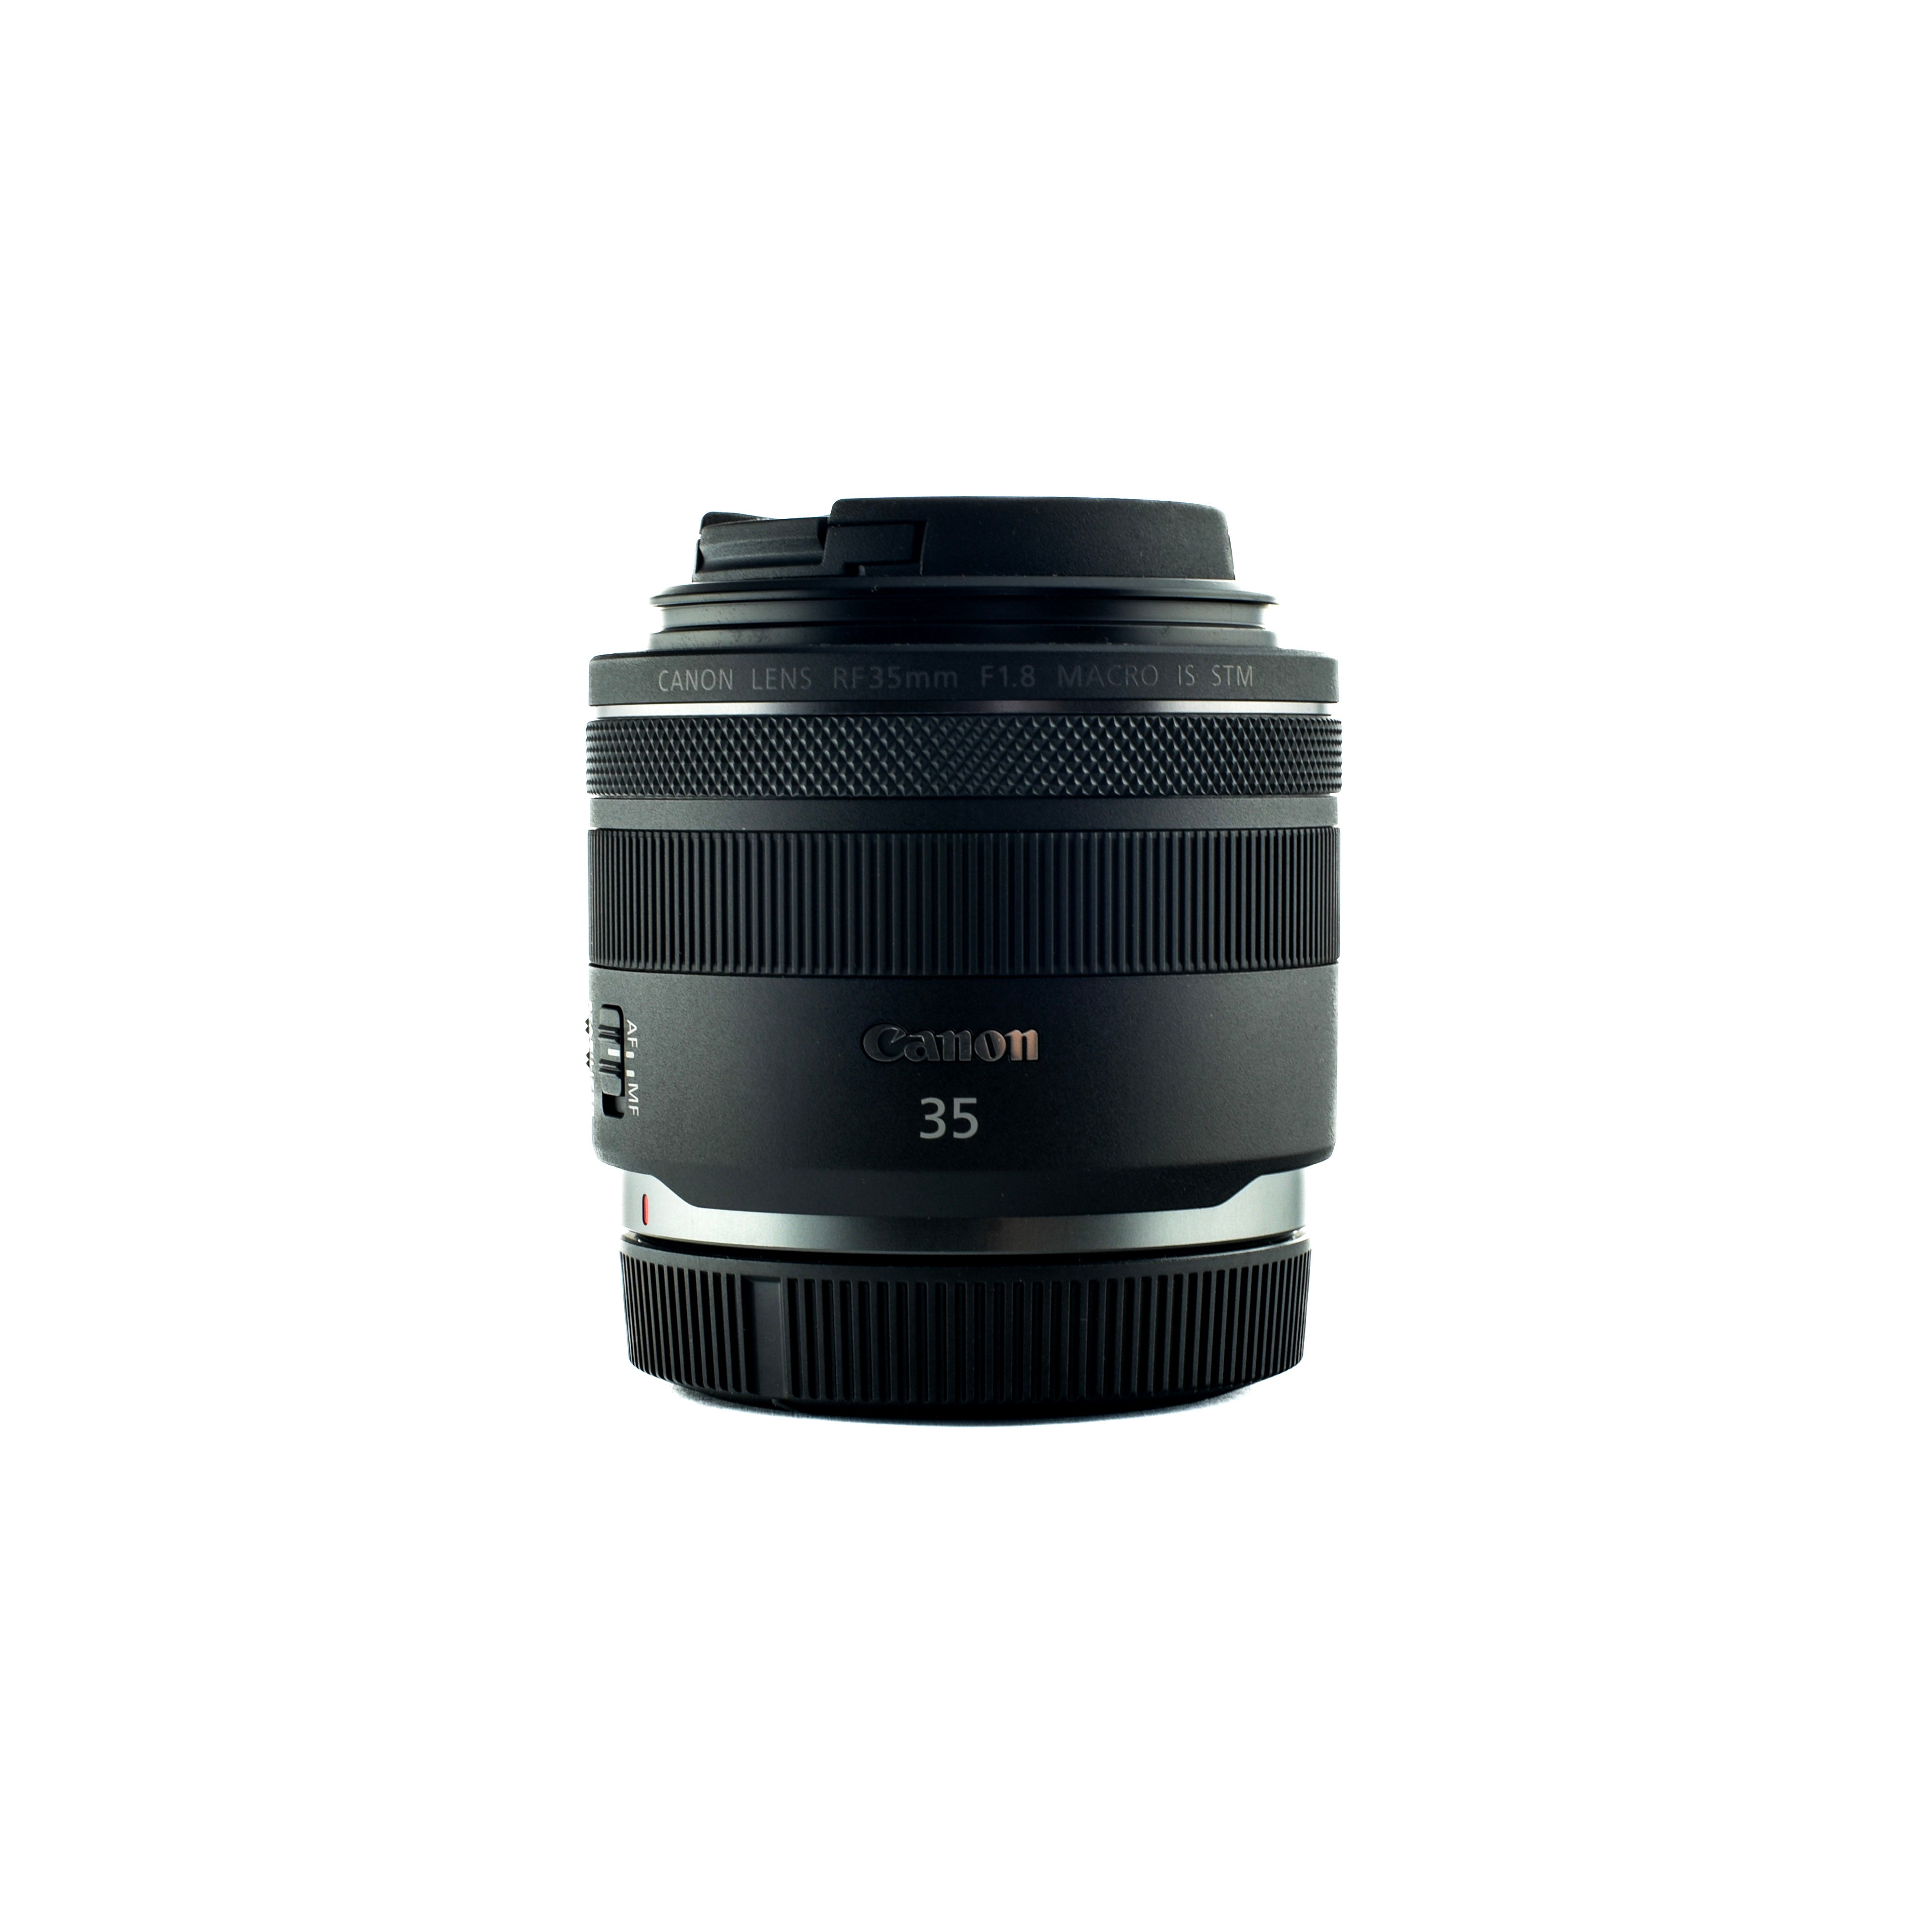 Canon RF 35mm f 1.8 Macro IS STM lens